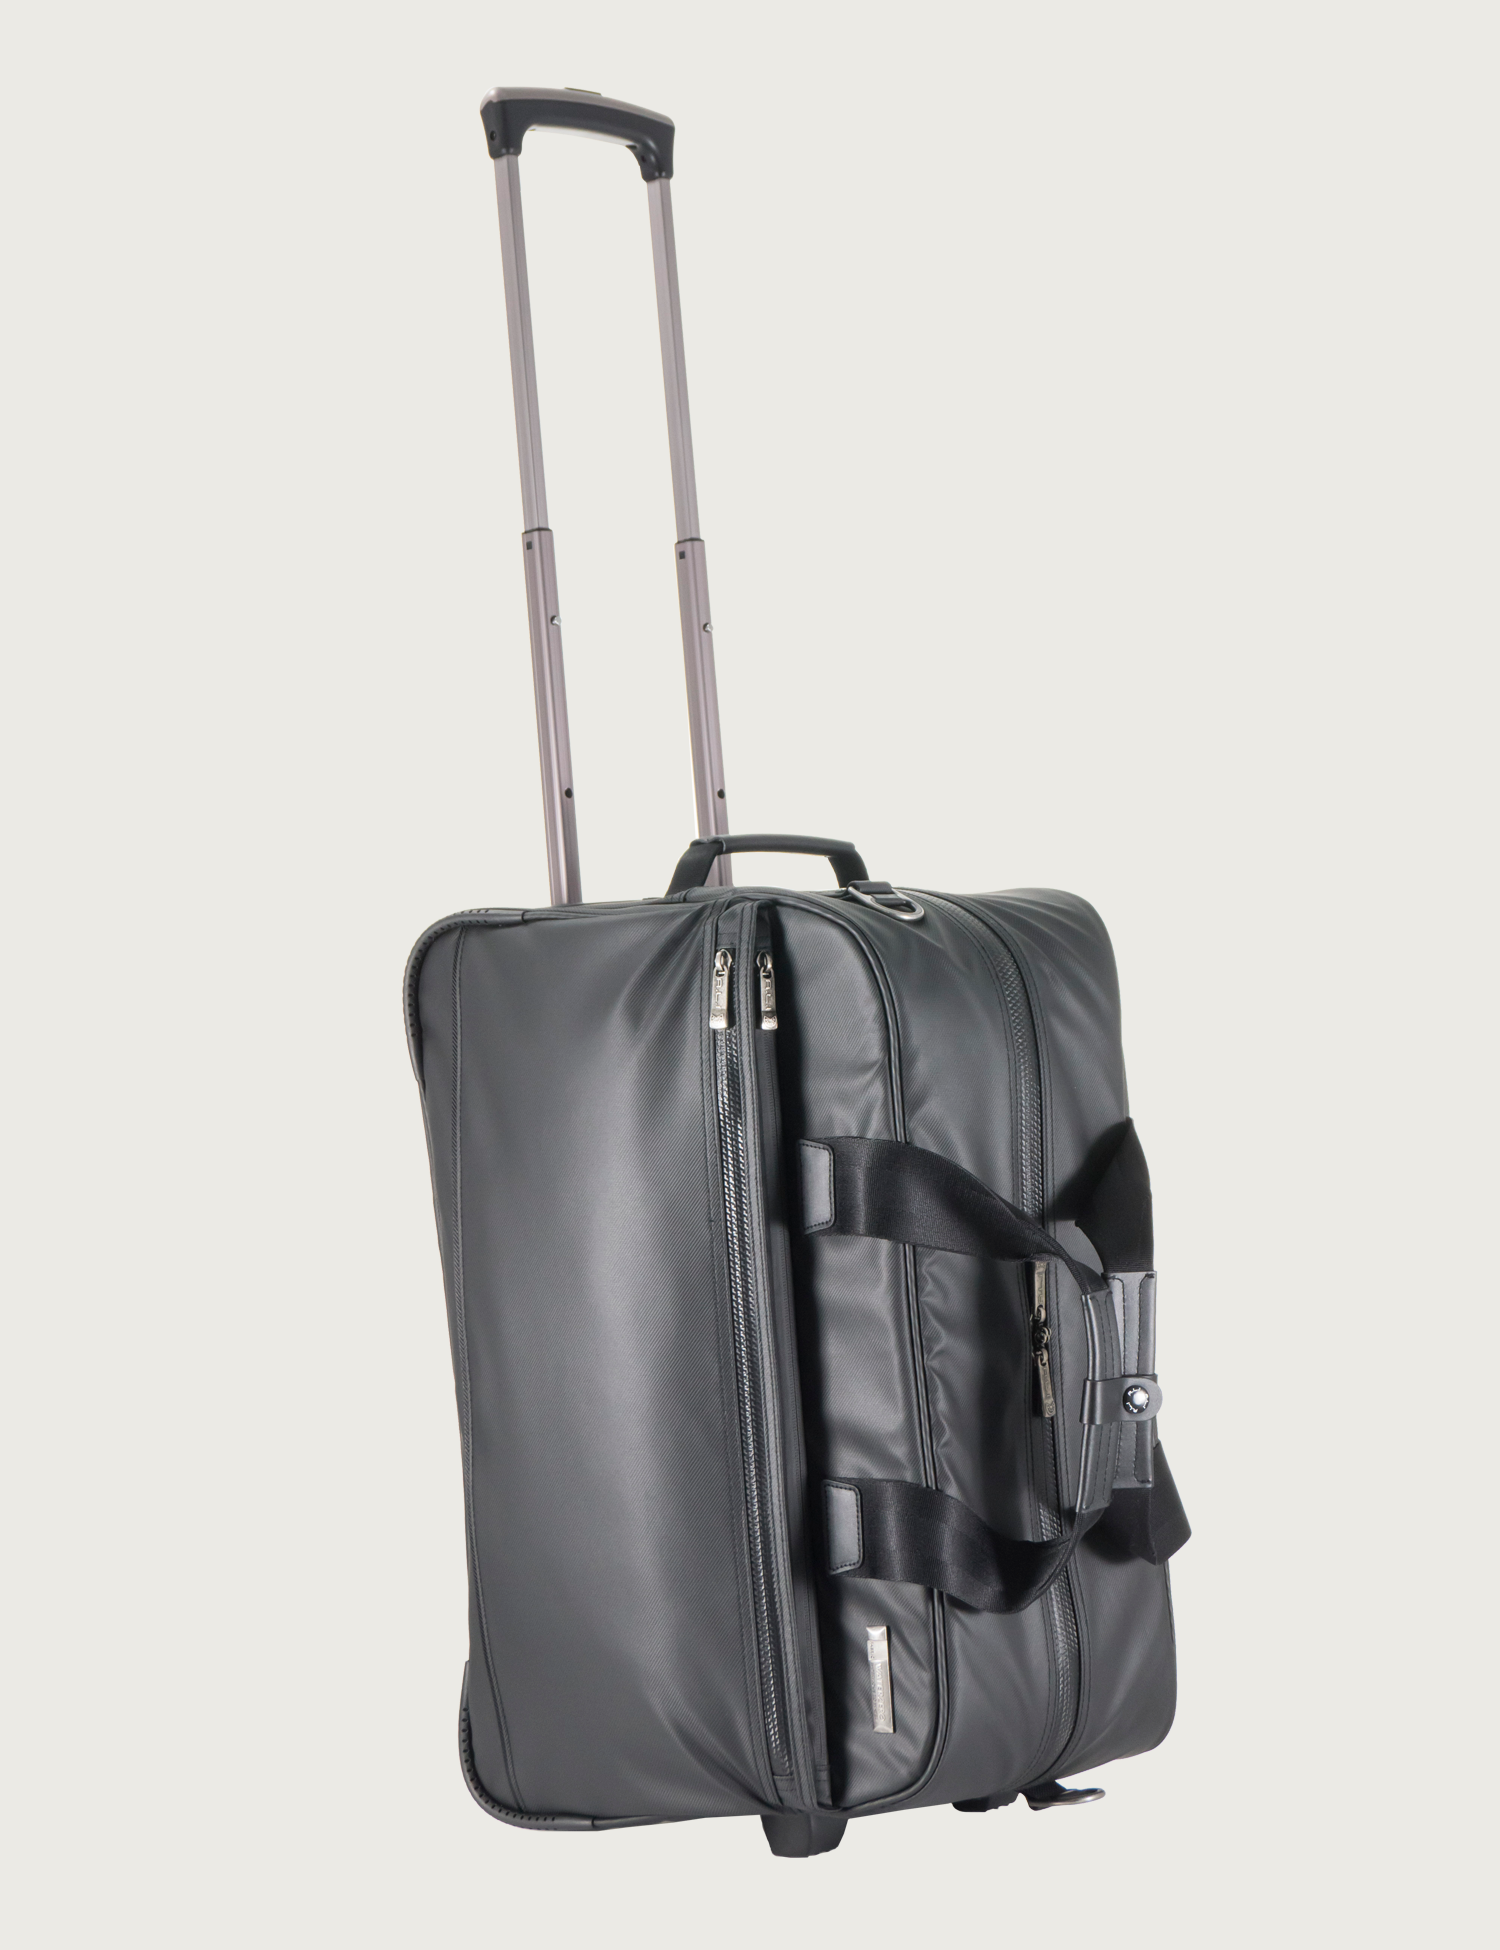 ビジネスバッグ | アジア・ラゲージ 公式サイト | Asia Luggage Inc.